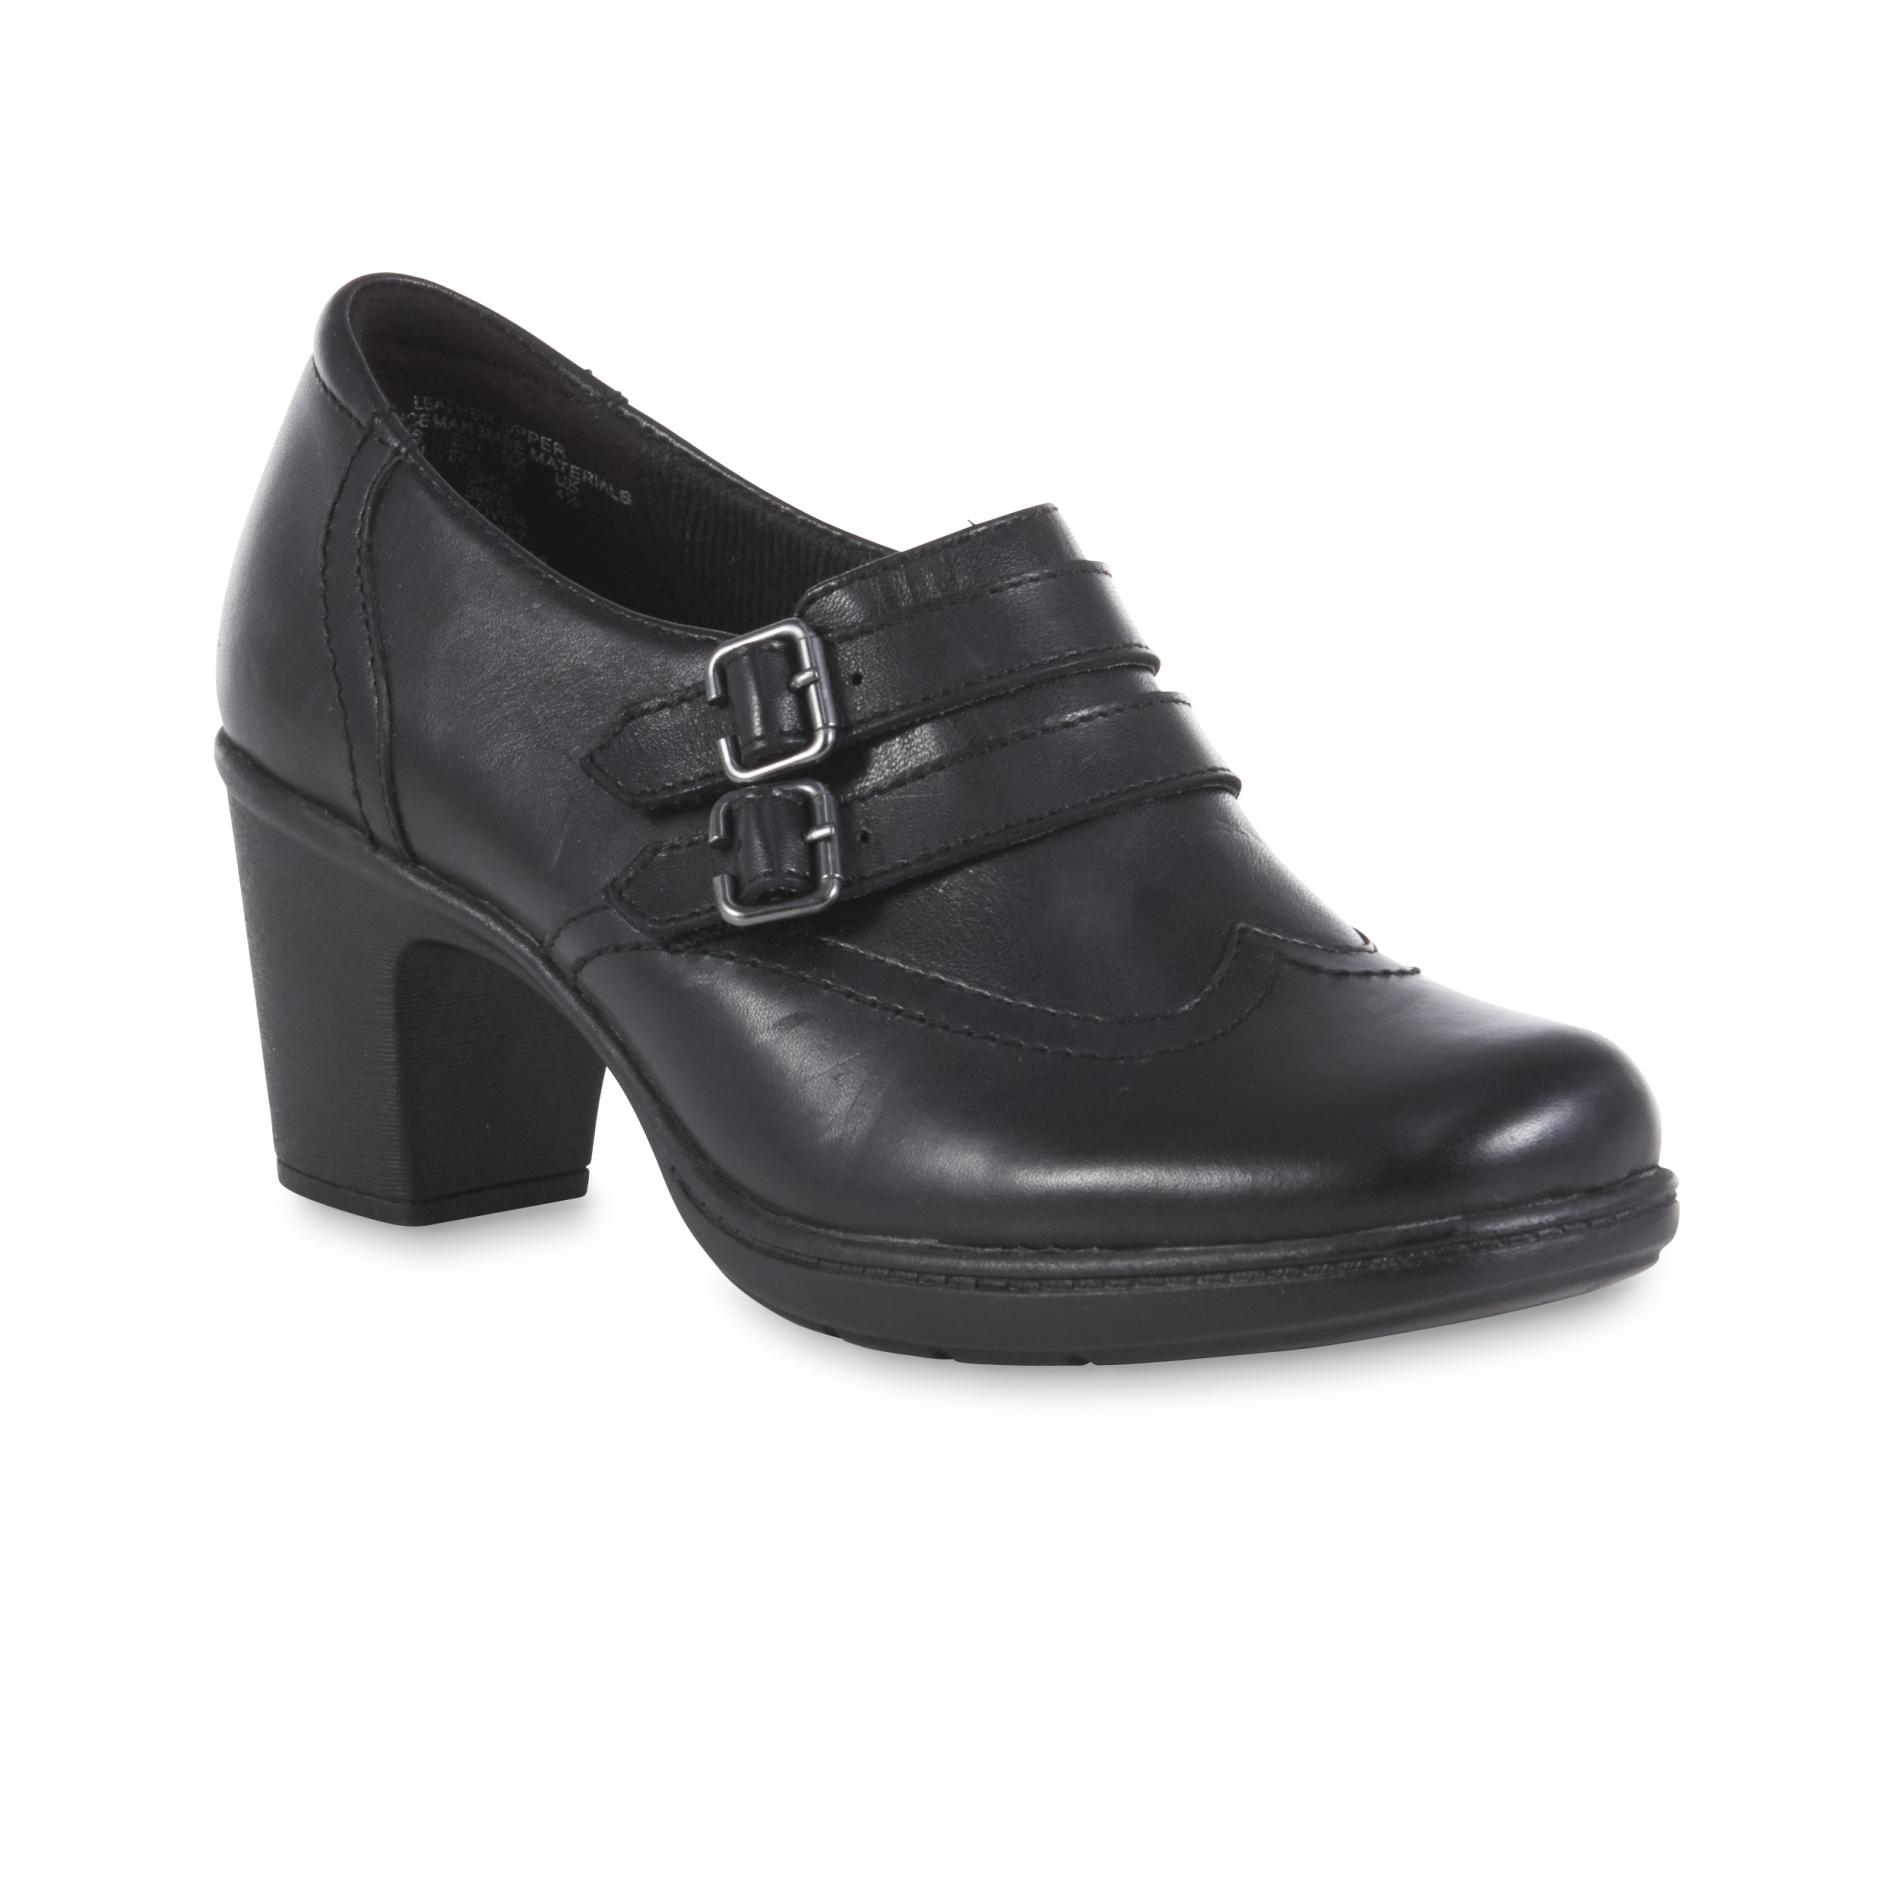 wide width heels for women